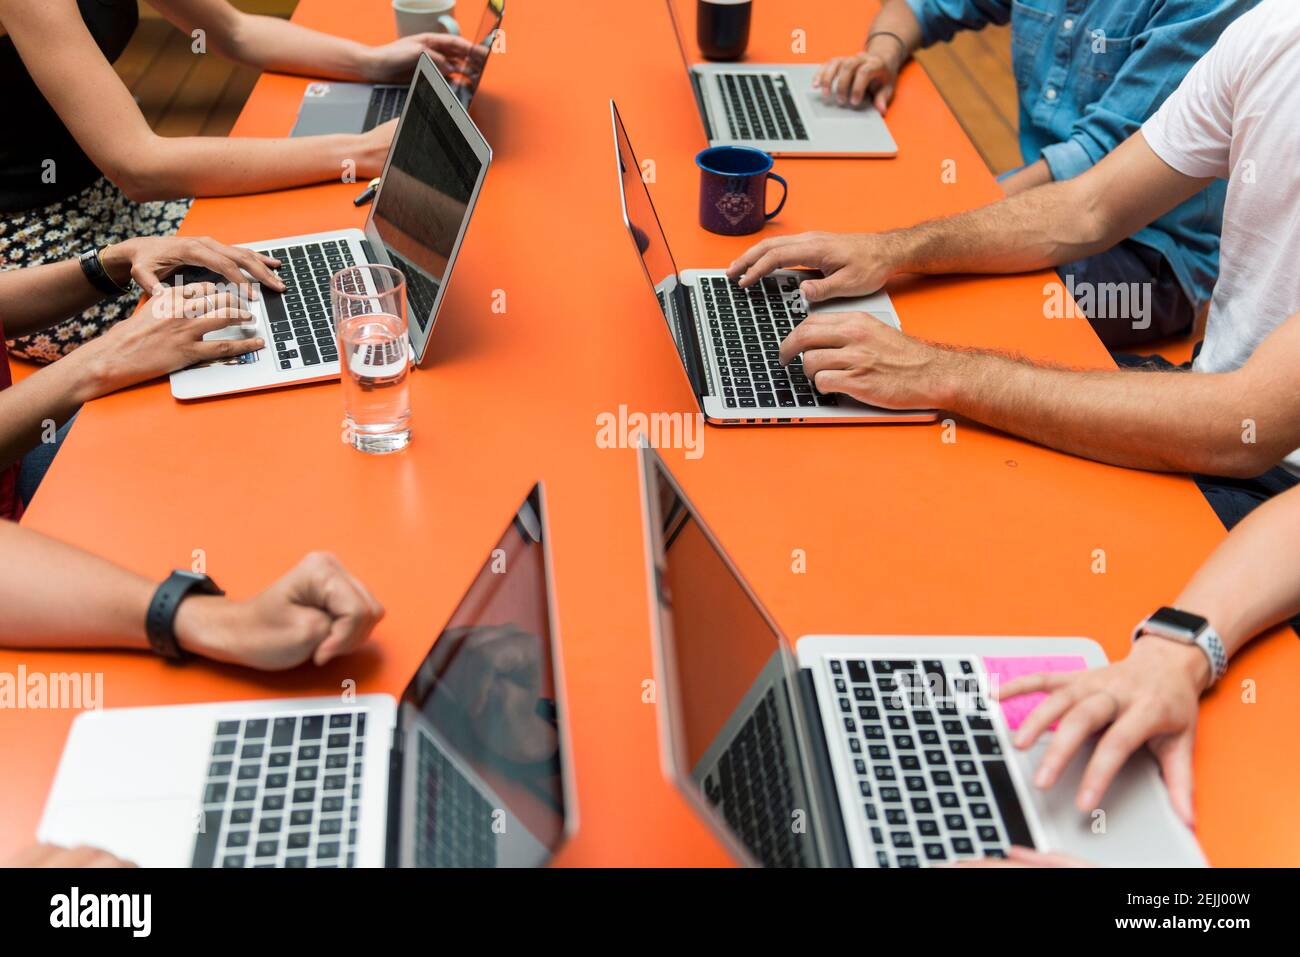 Six personnes se sont assises autour d'une table orange lumineuse dans un réunion tout en travaillant sur les ordinateurs portables Banque D'Images